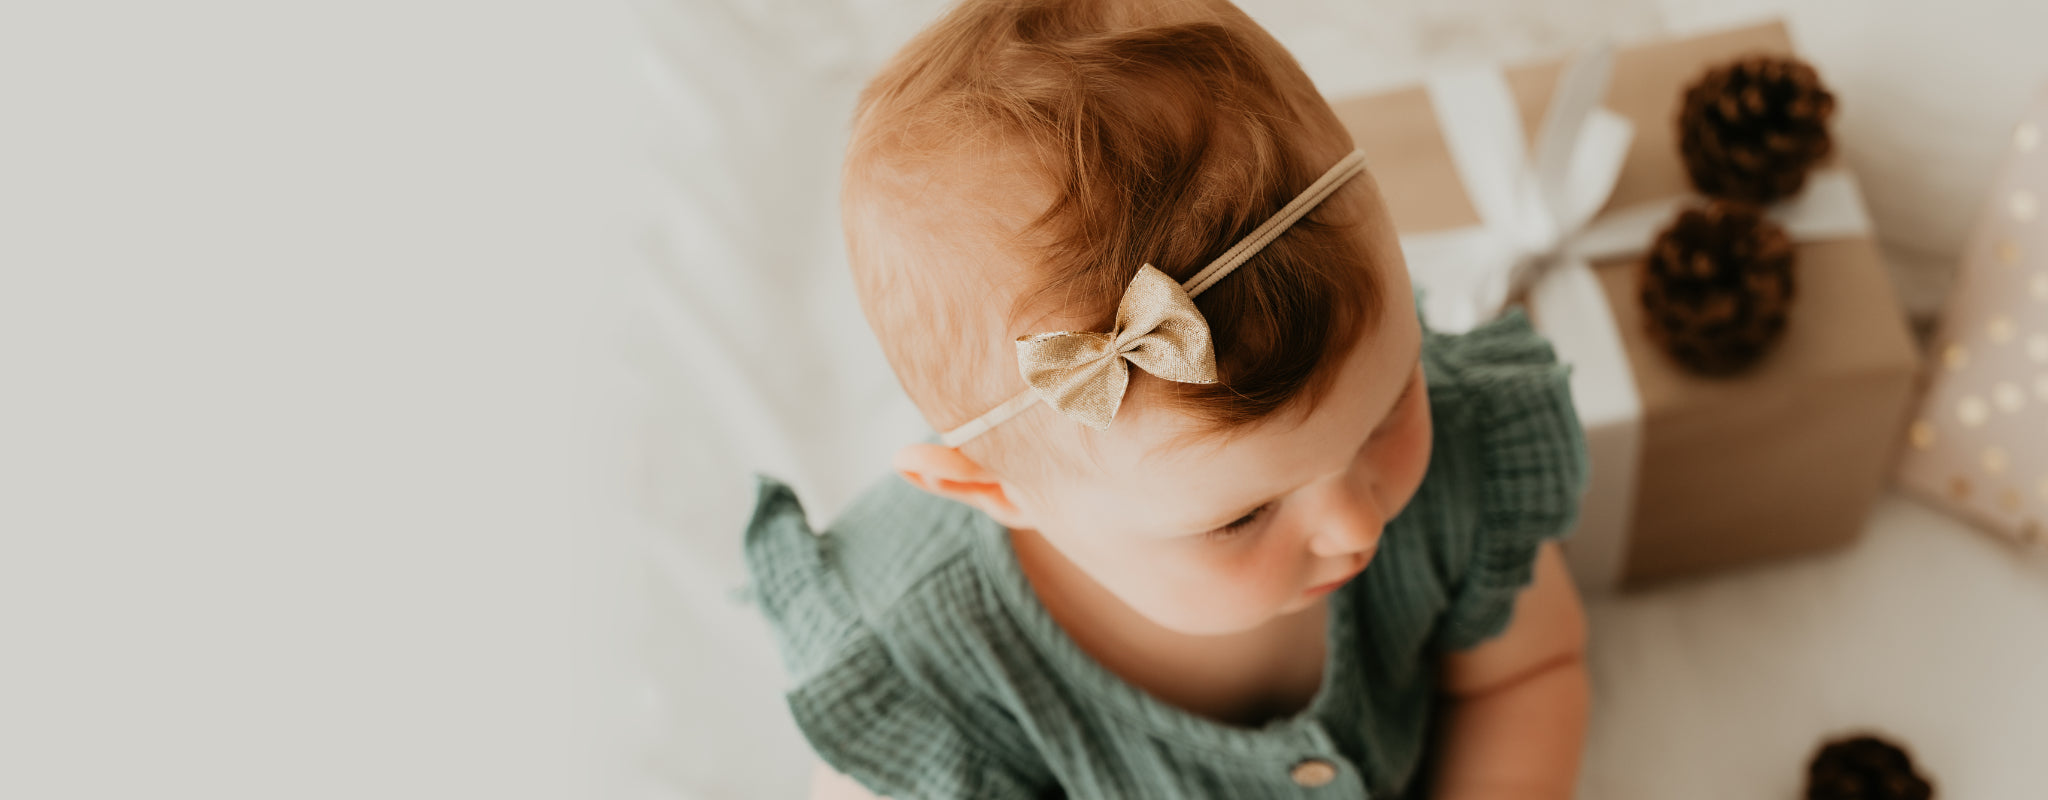 Baby mit goldener Schleife an Haarband